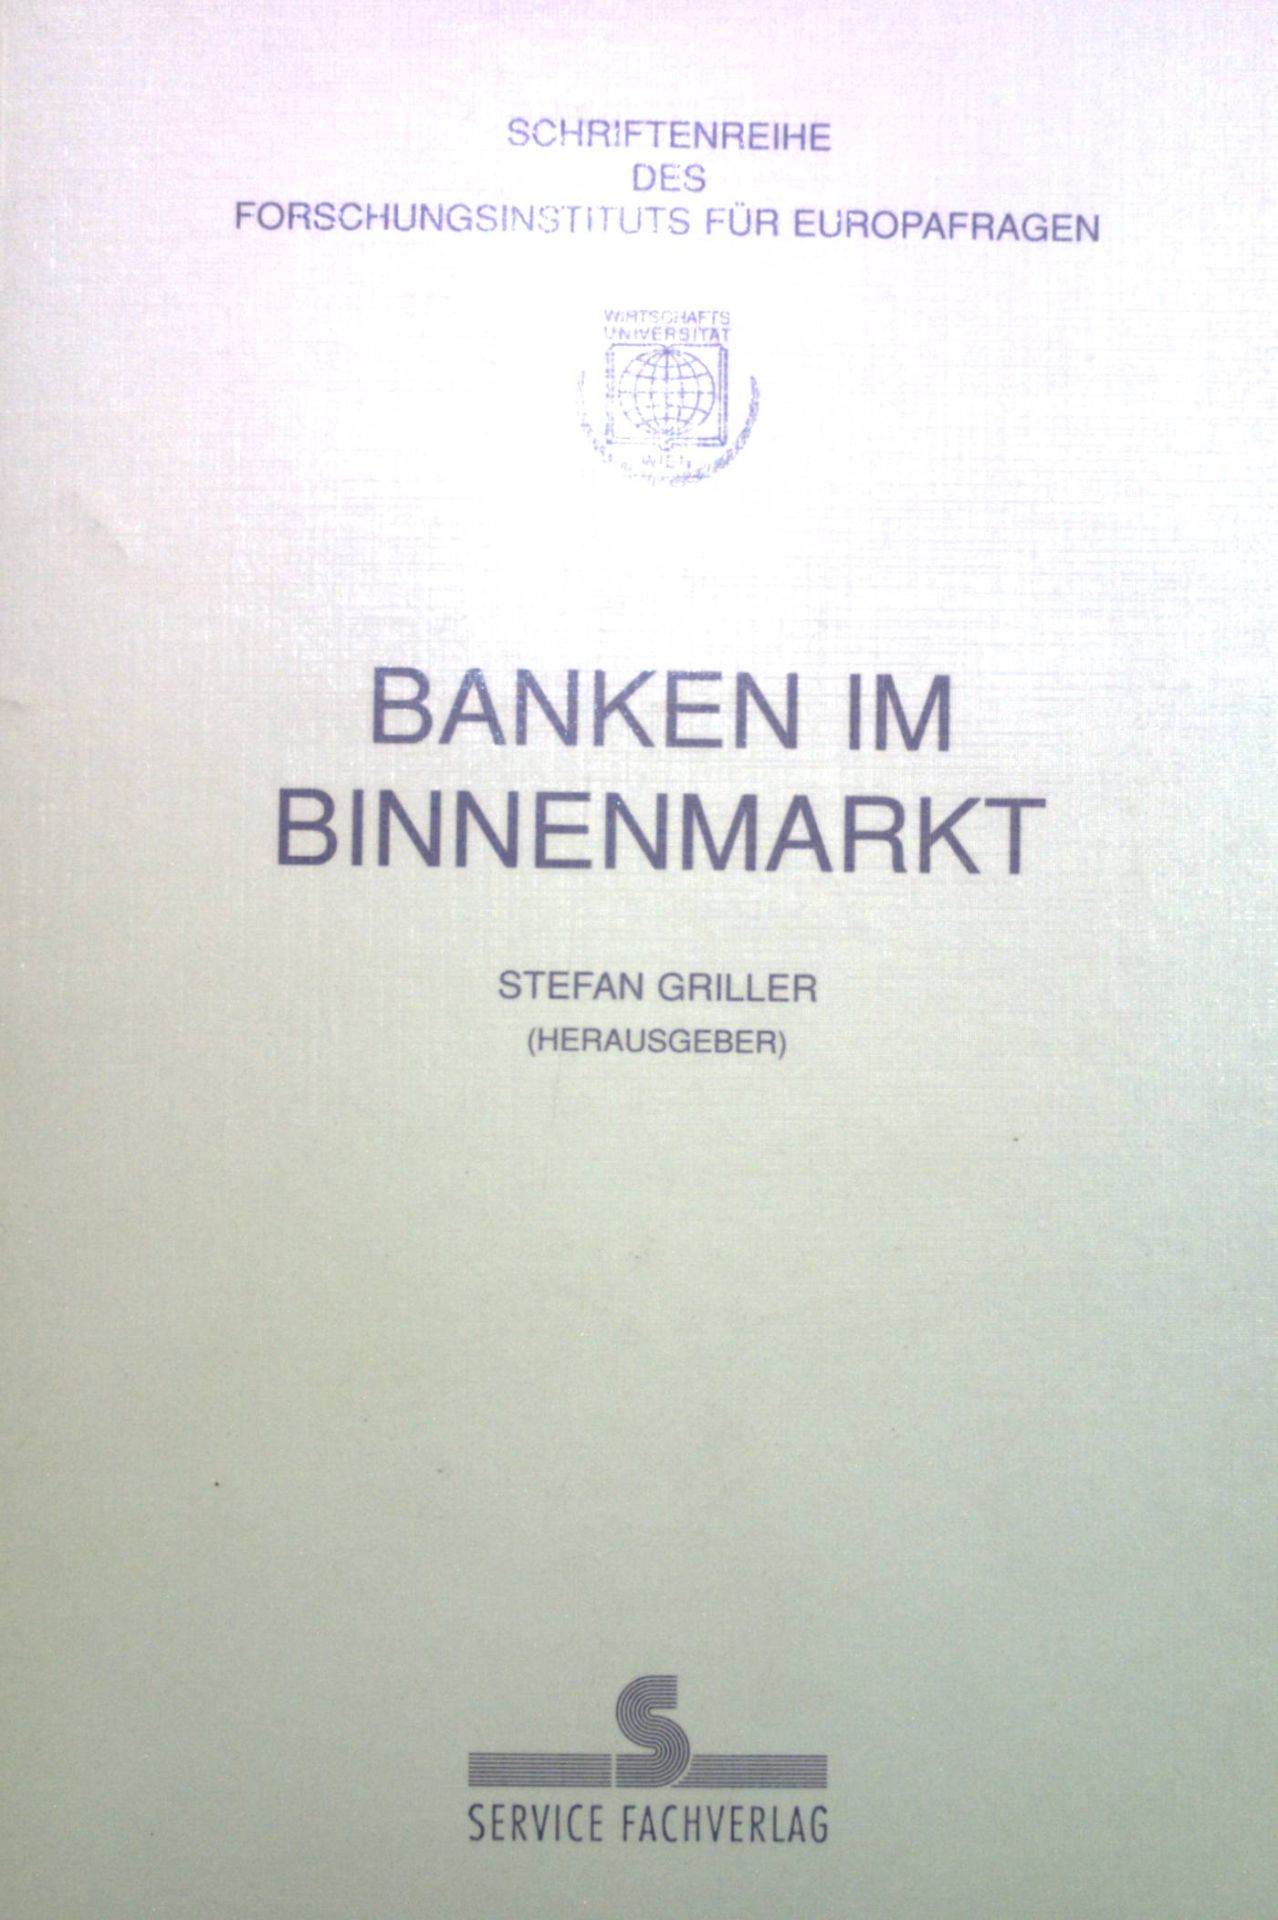 Banken im Binnenmarkt. Schriftenreihe des Forschungsinstituts für Europafragen ; Bd. 7 - Griller, Stefan und Thomas Eilmansberger